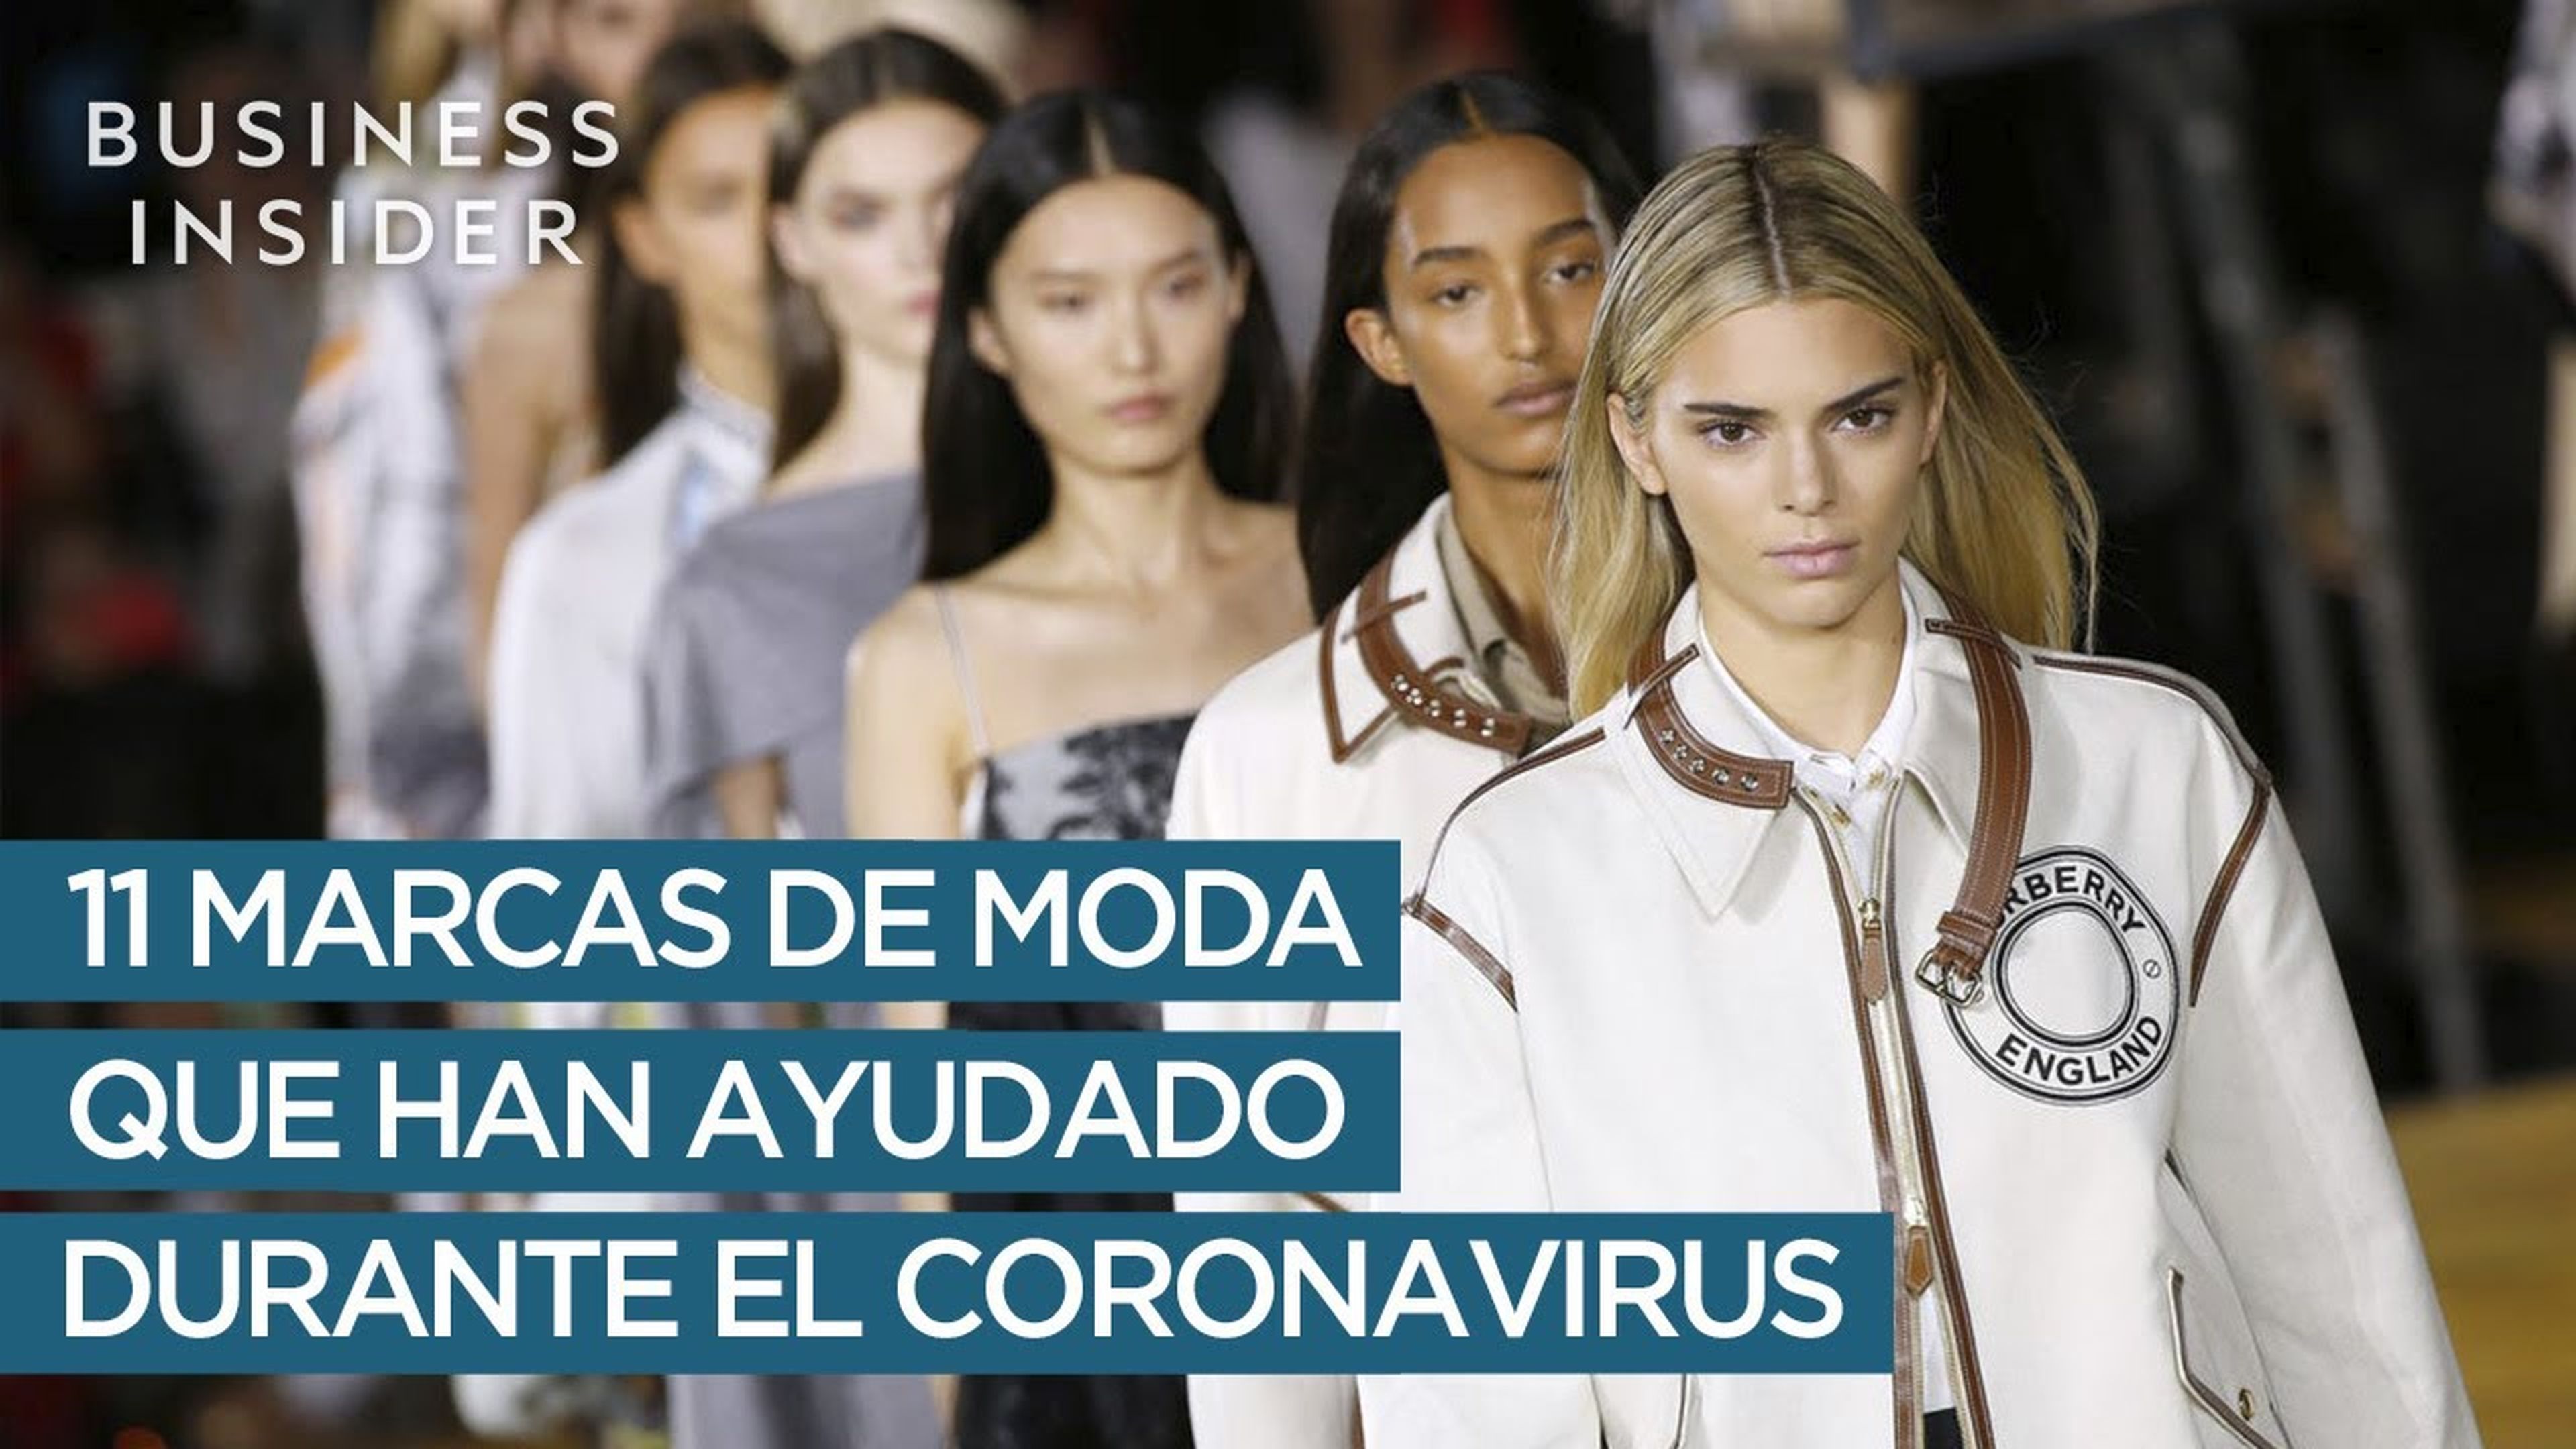 11 marcas de moda que han ayudado durante el coronavirus